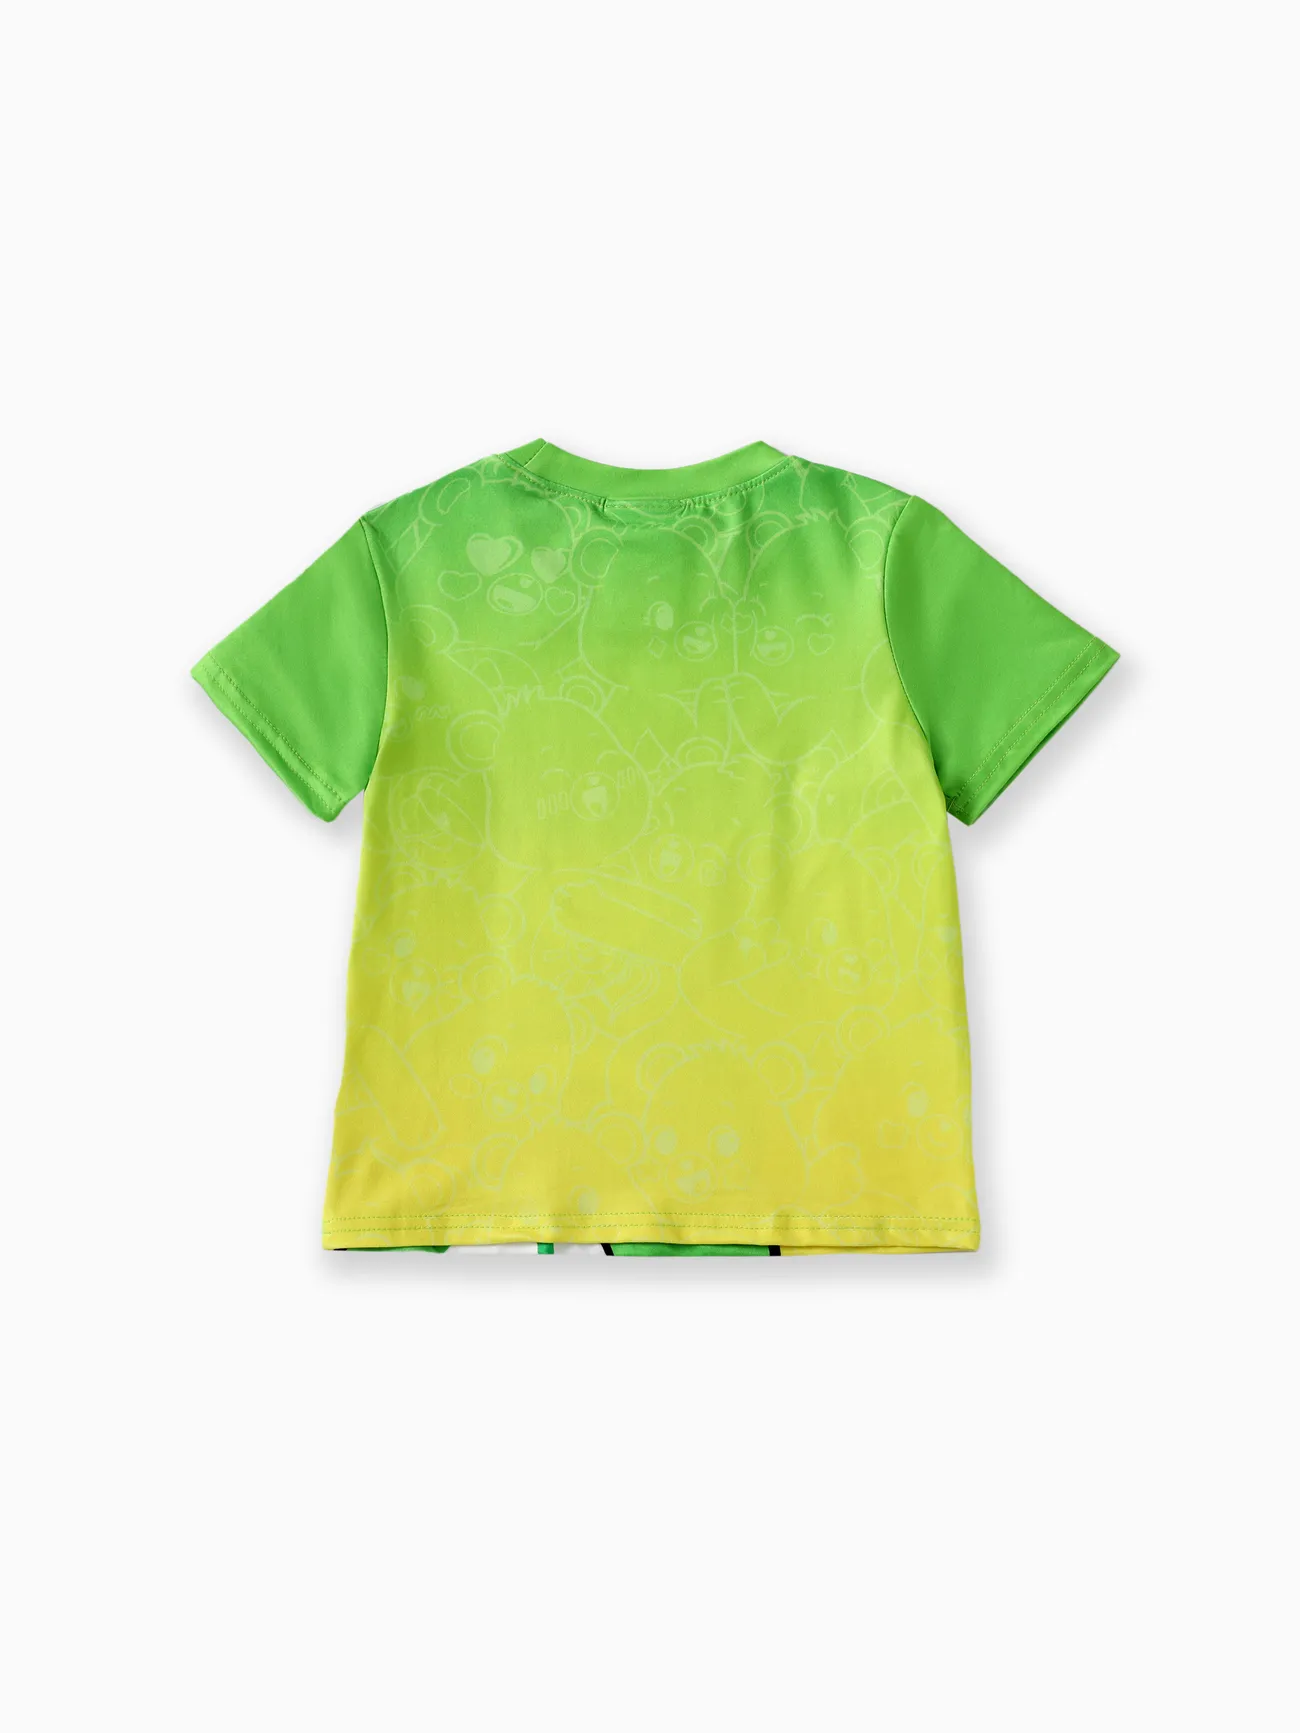 Glücksbärchis Unisex Kindlich T-Shirts grün big image 1